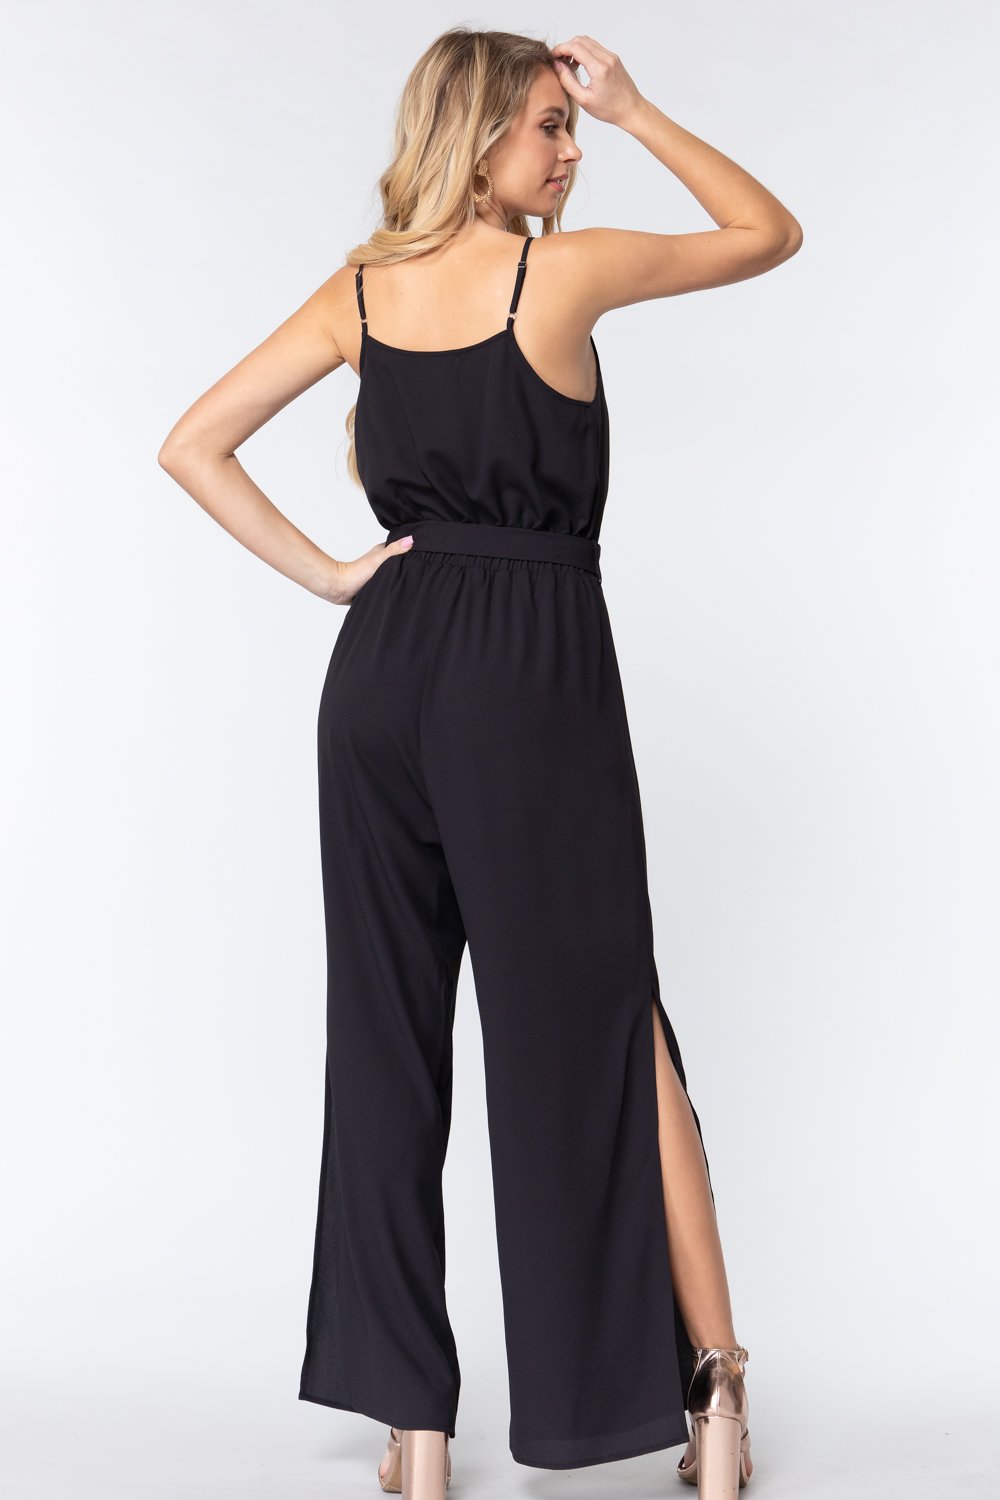 Cowl Neck Cami Woven Jumpsuit - Fashion Quality Boutik